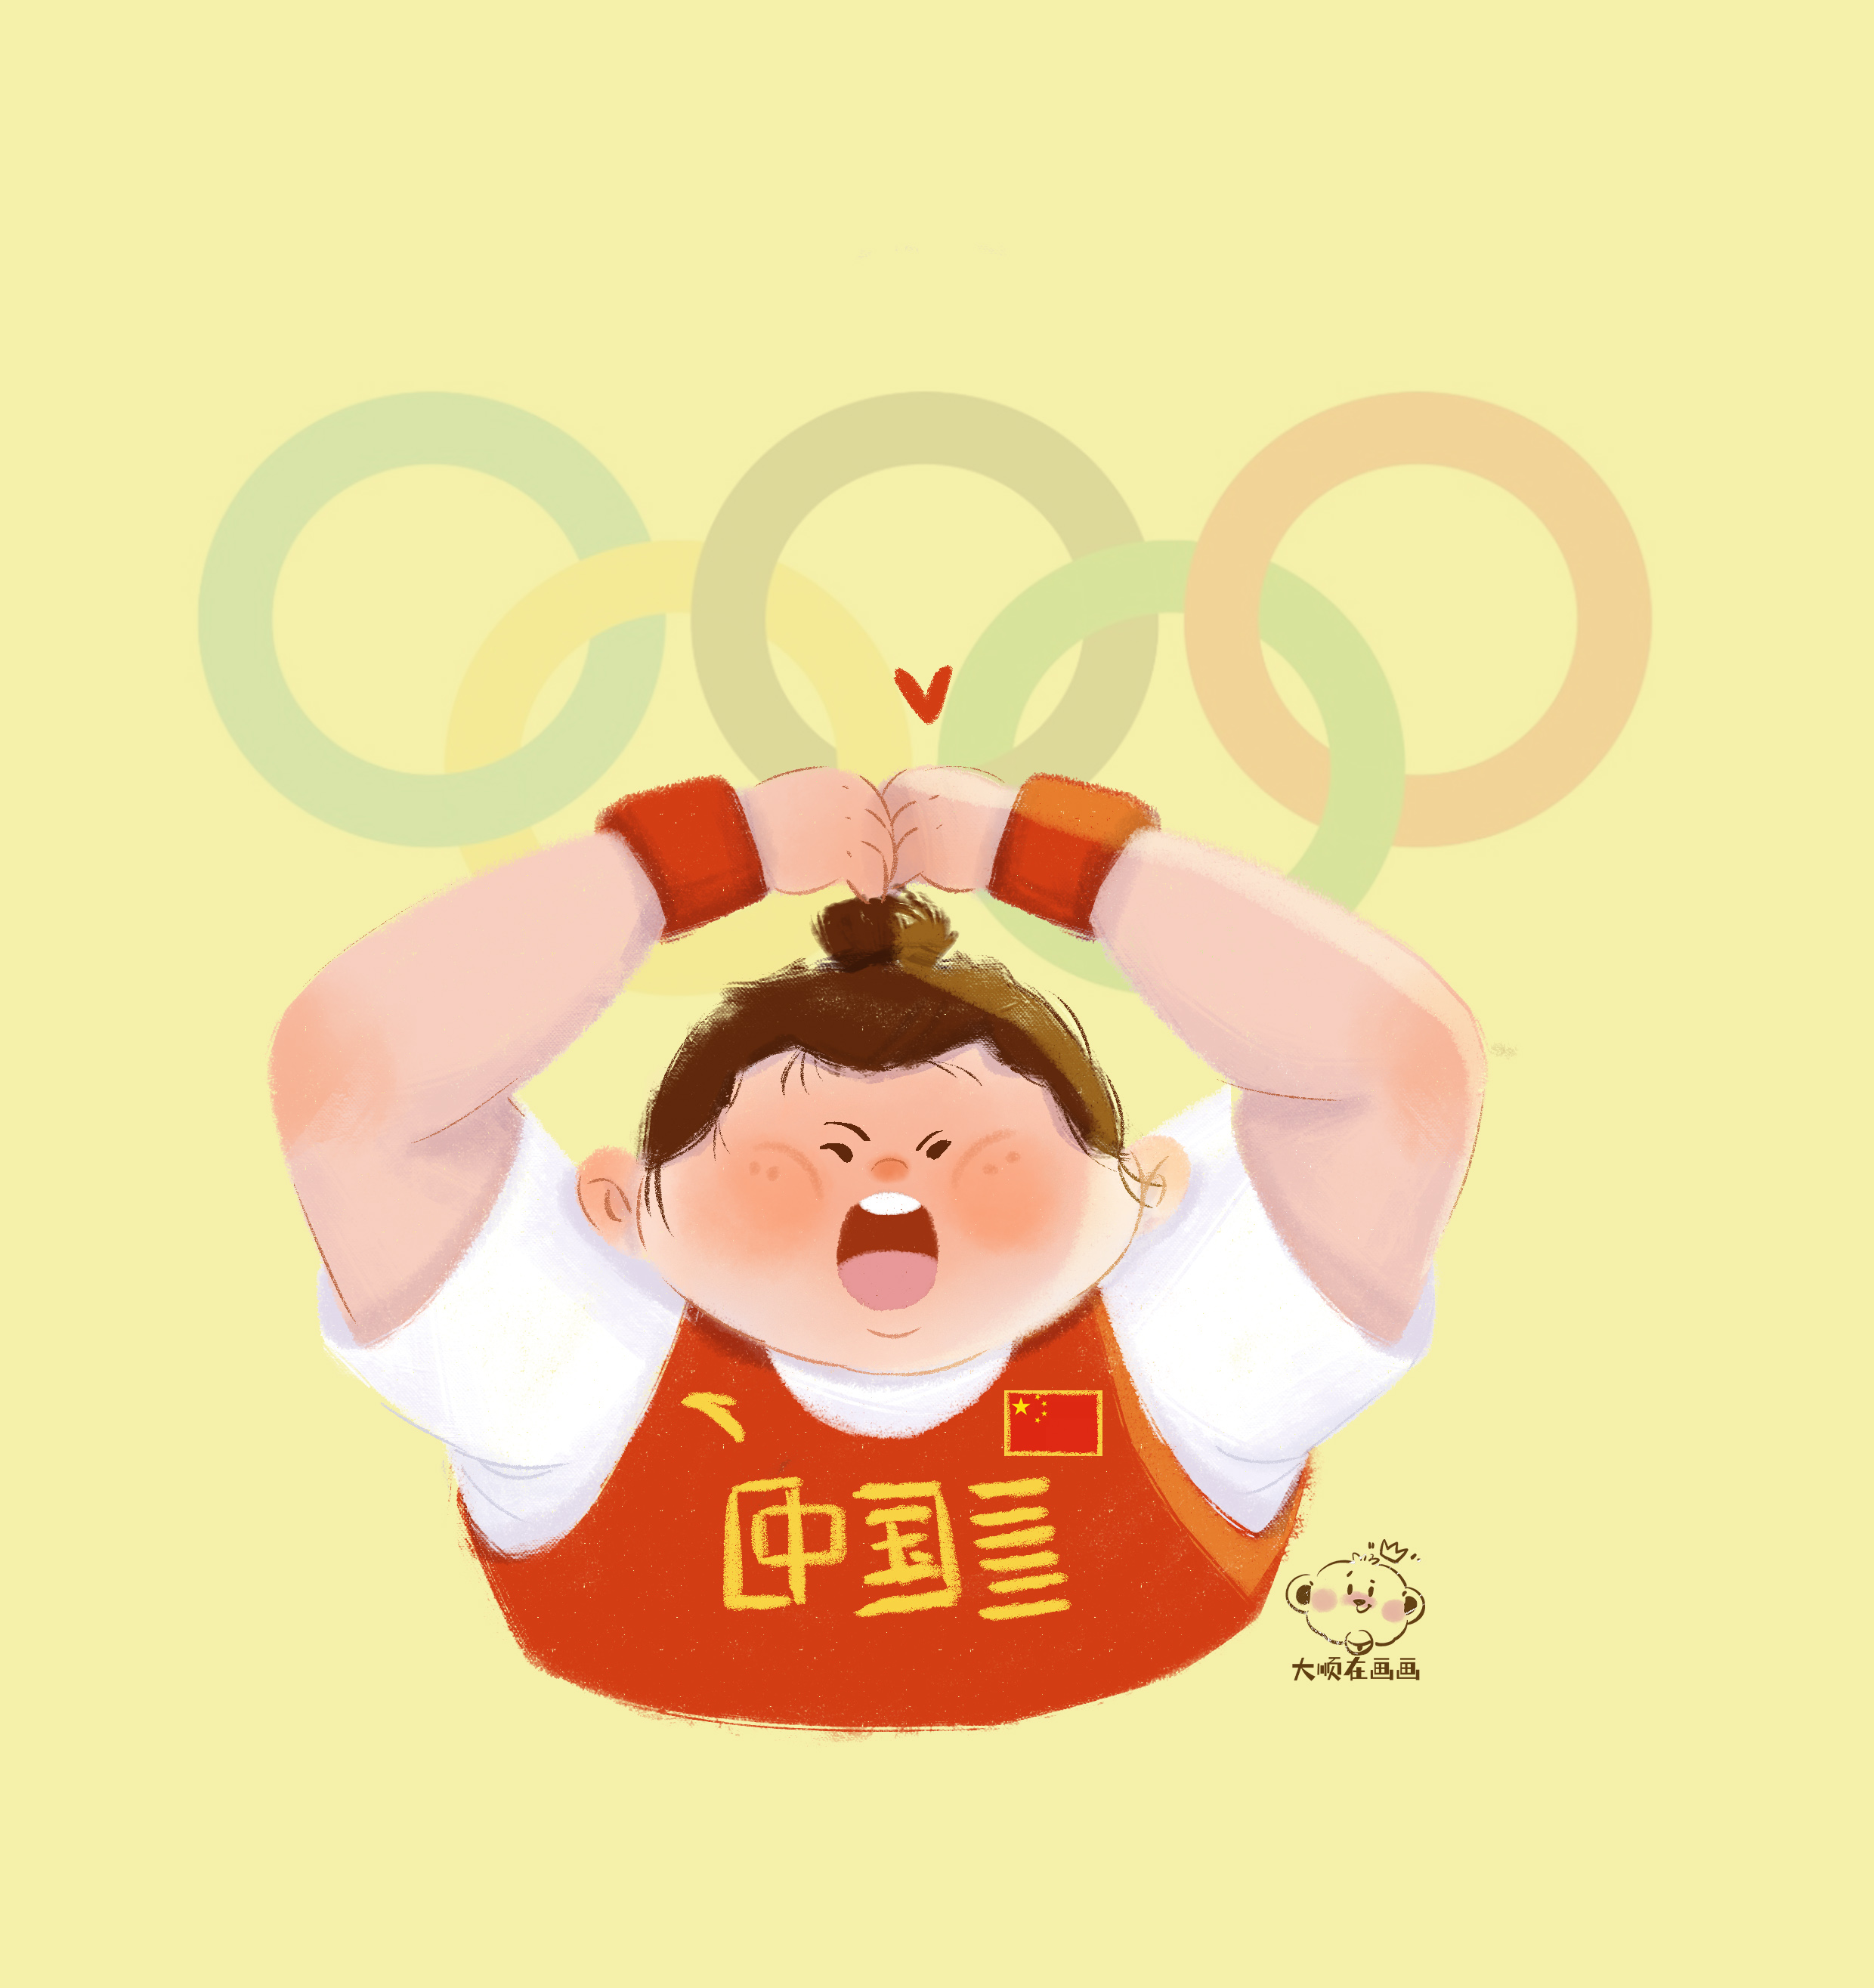 萌！慈溪手绘达人创作奥运健儿Q版形象 看了都想收藏-新闻中心-中国宁波网